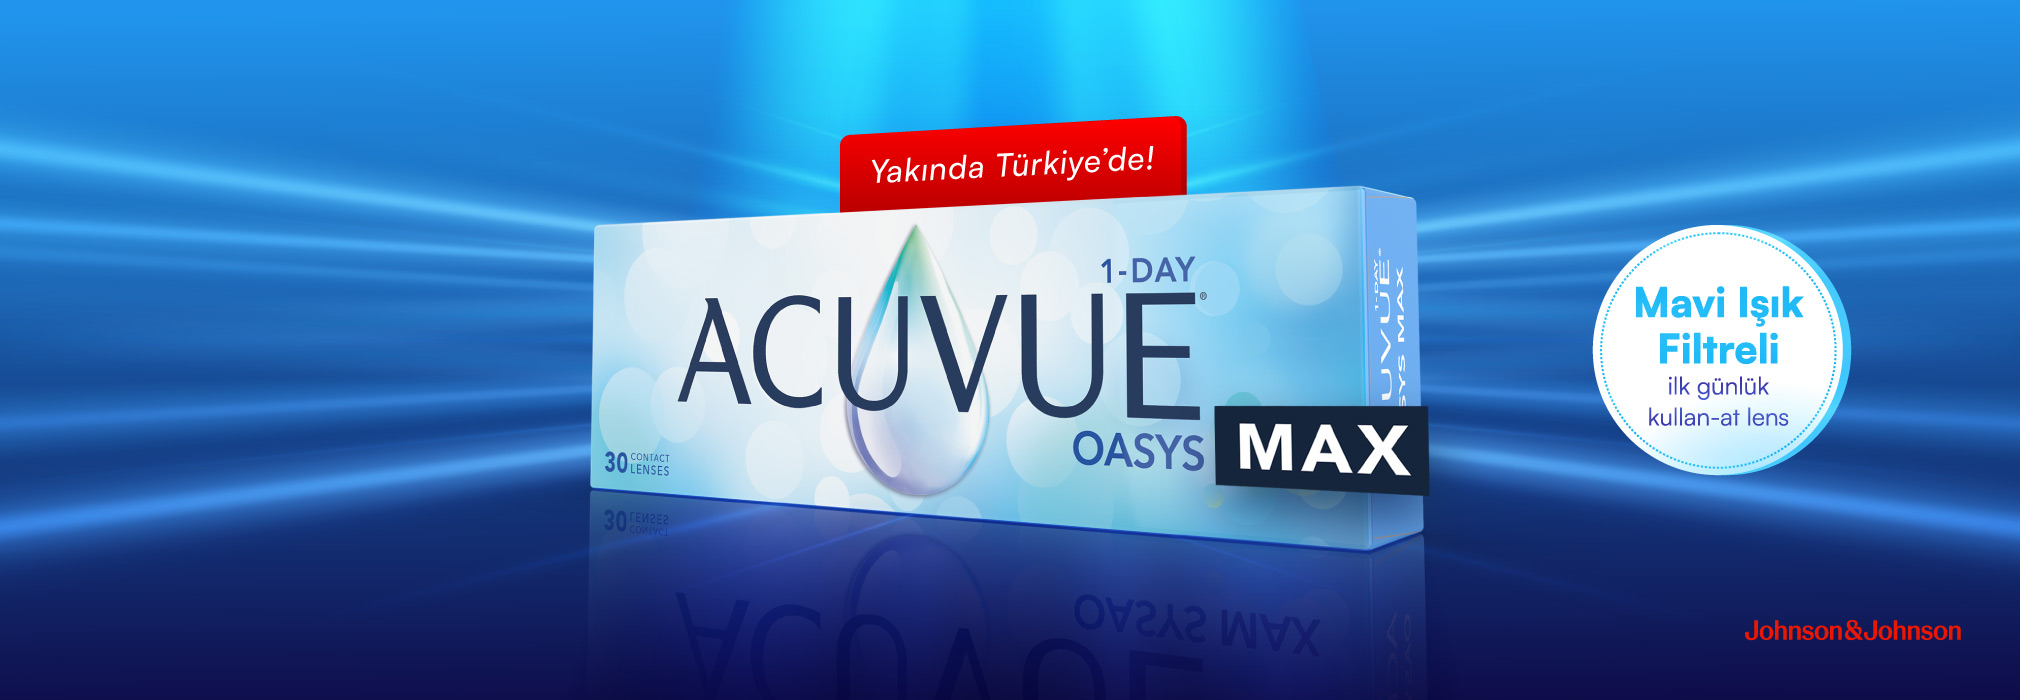 Acuvue Oasys Max 1-Day Yakında Türkiye'de